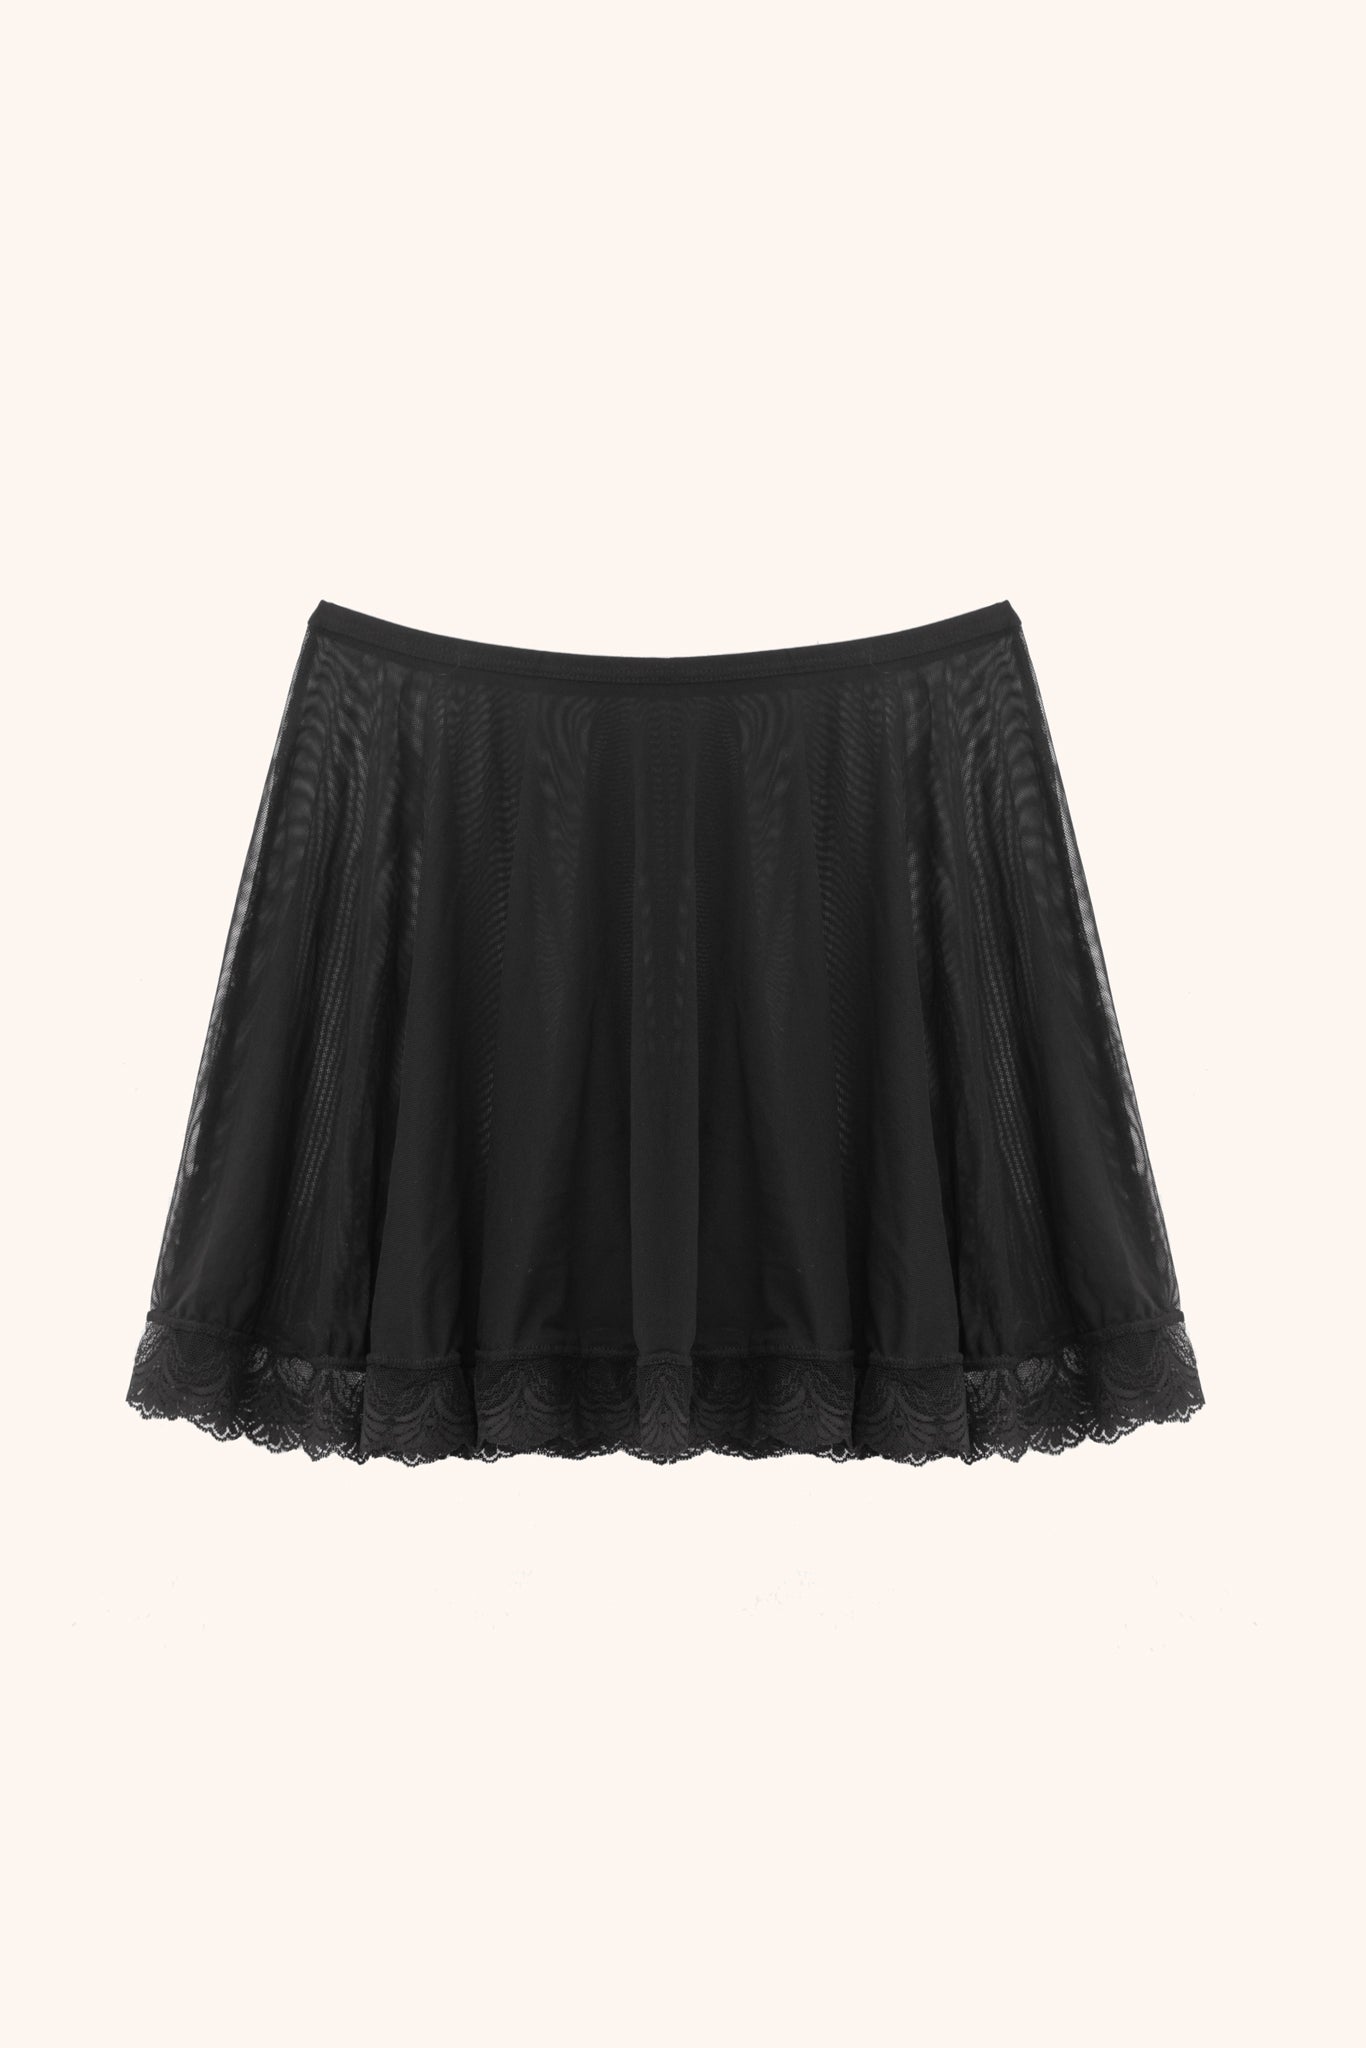 polina-mesh-skirt.jpg